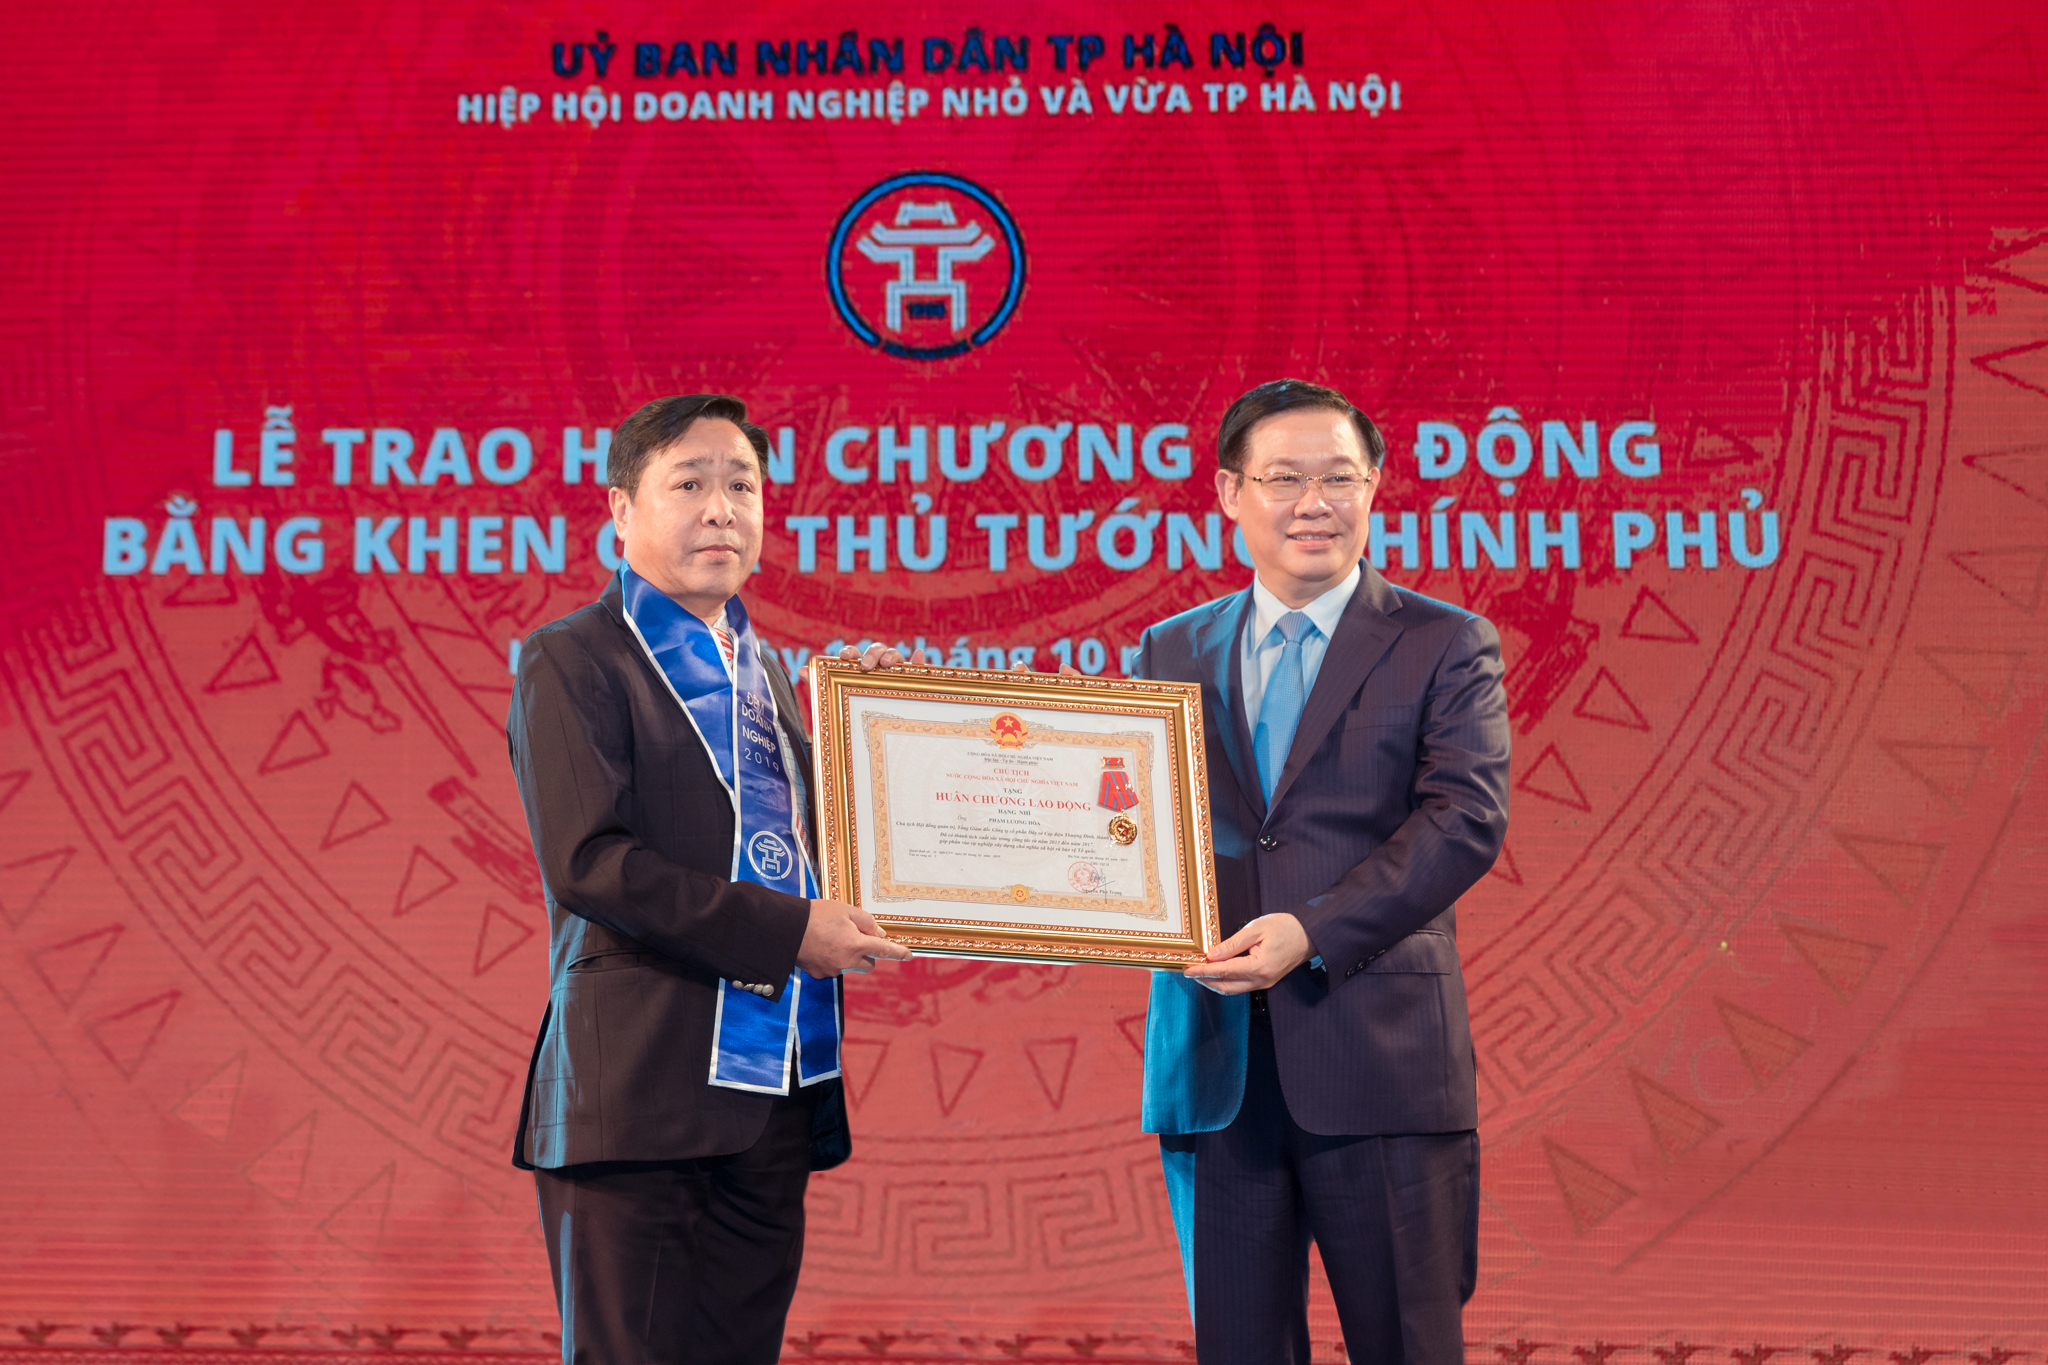 Năm 2019 - Năm thành công của doaonNăm 2019 đã chính thức khép lạivới những con số tăng trưởng ấn tượng của nền kinh tế, trong đó có đóng góp không nhỏ của các tổ chức Hiệp hội và cộng đồng doanh nhân.h nhân Việt